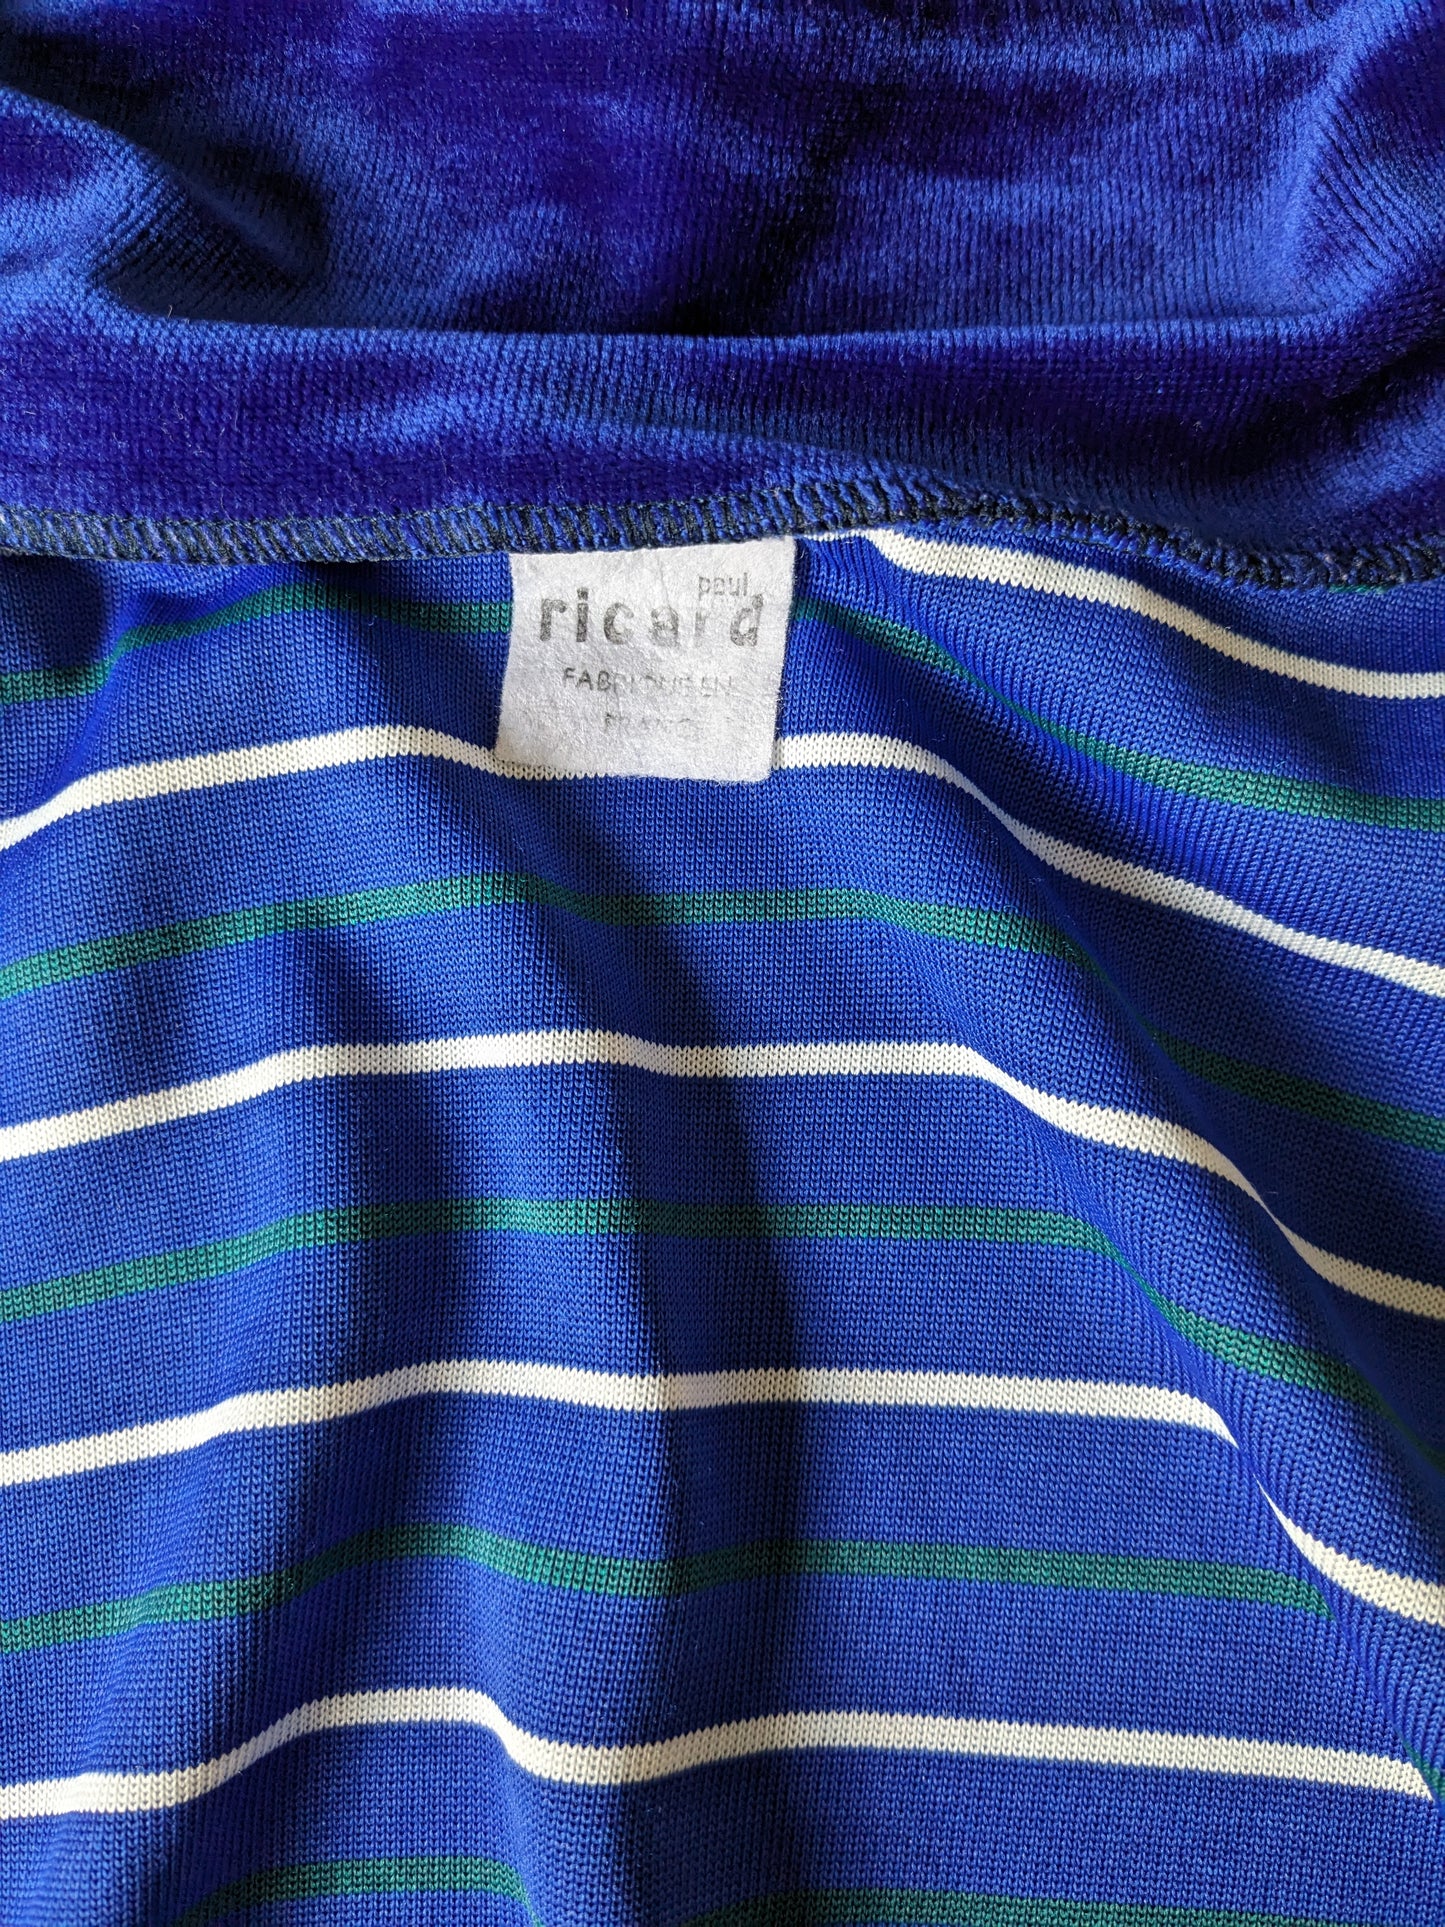 Vintage Velor / Velvet Vest. Blue green white striped. Size M.